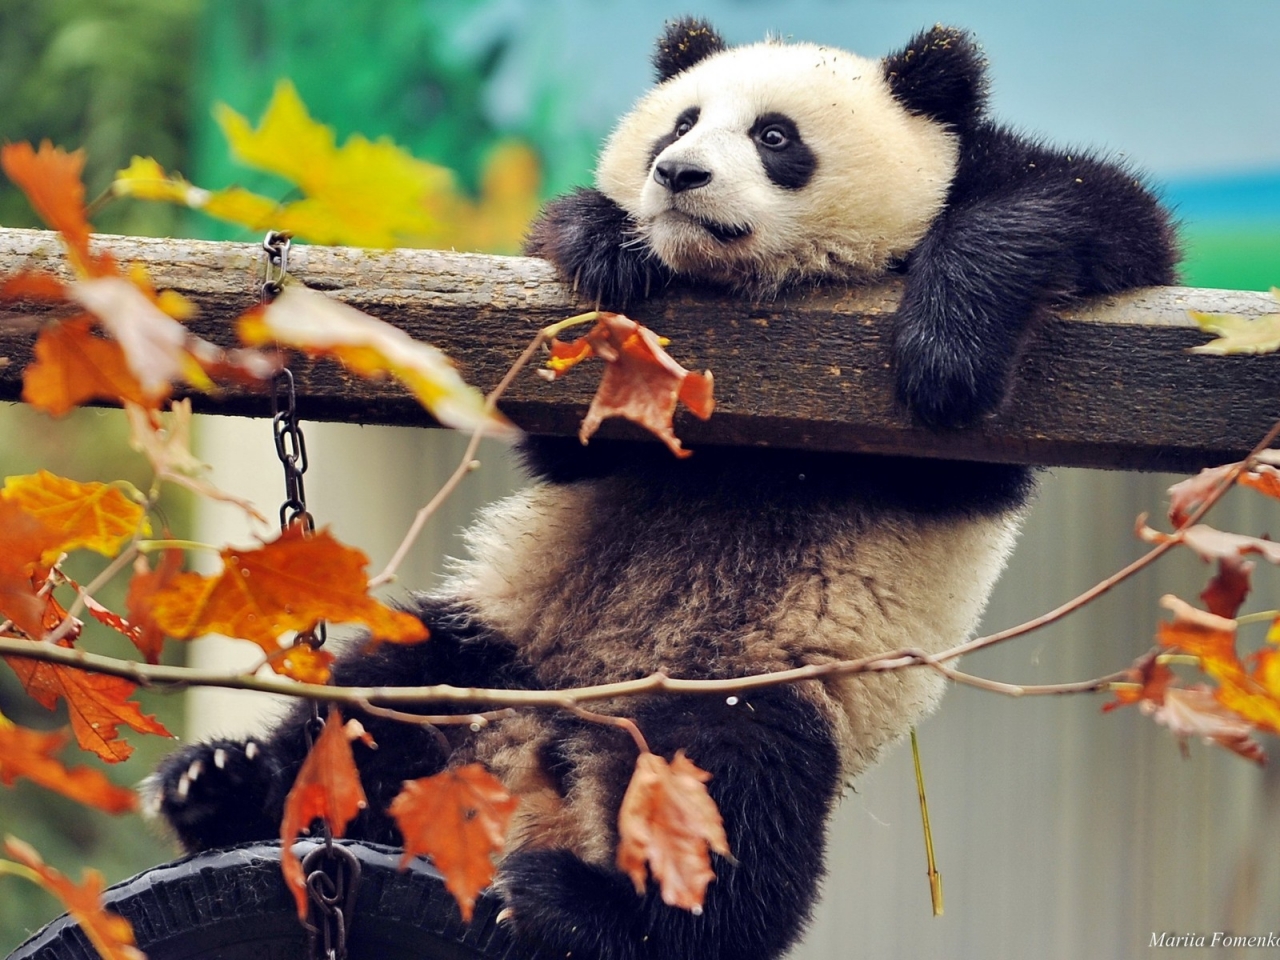 Cute Panda Climbing for 1280 x 960 resolution